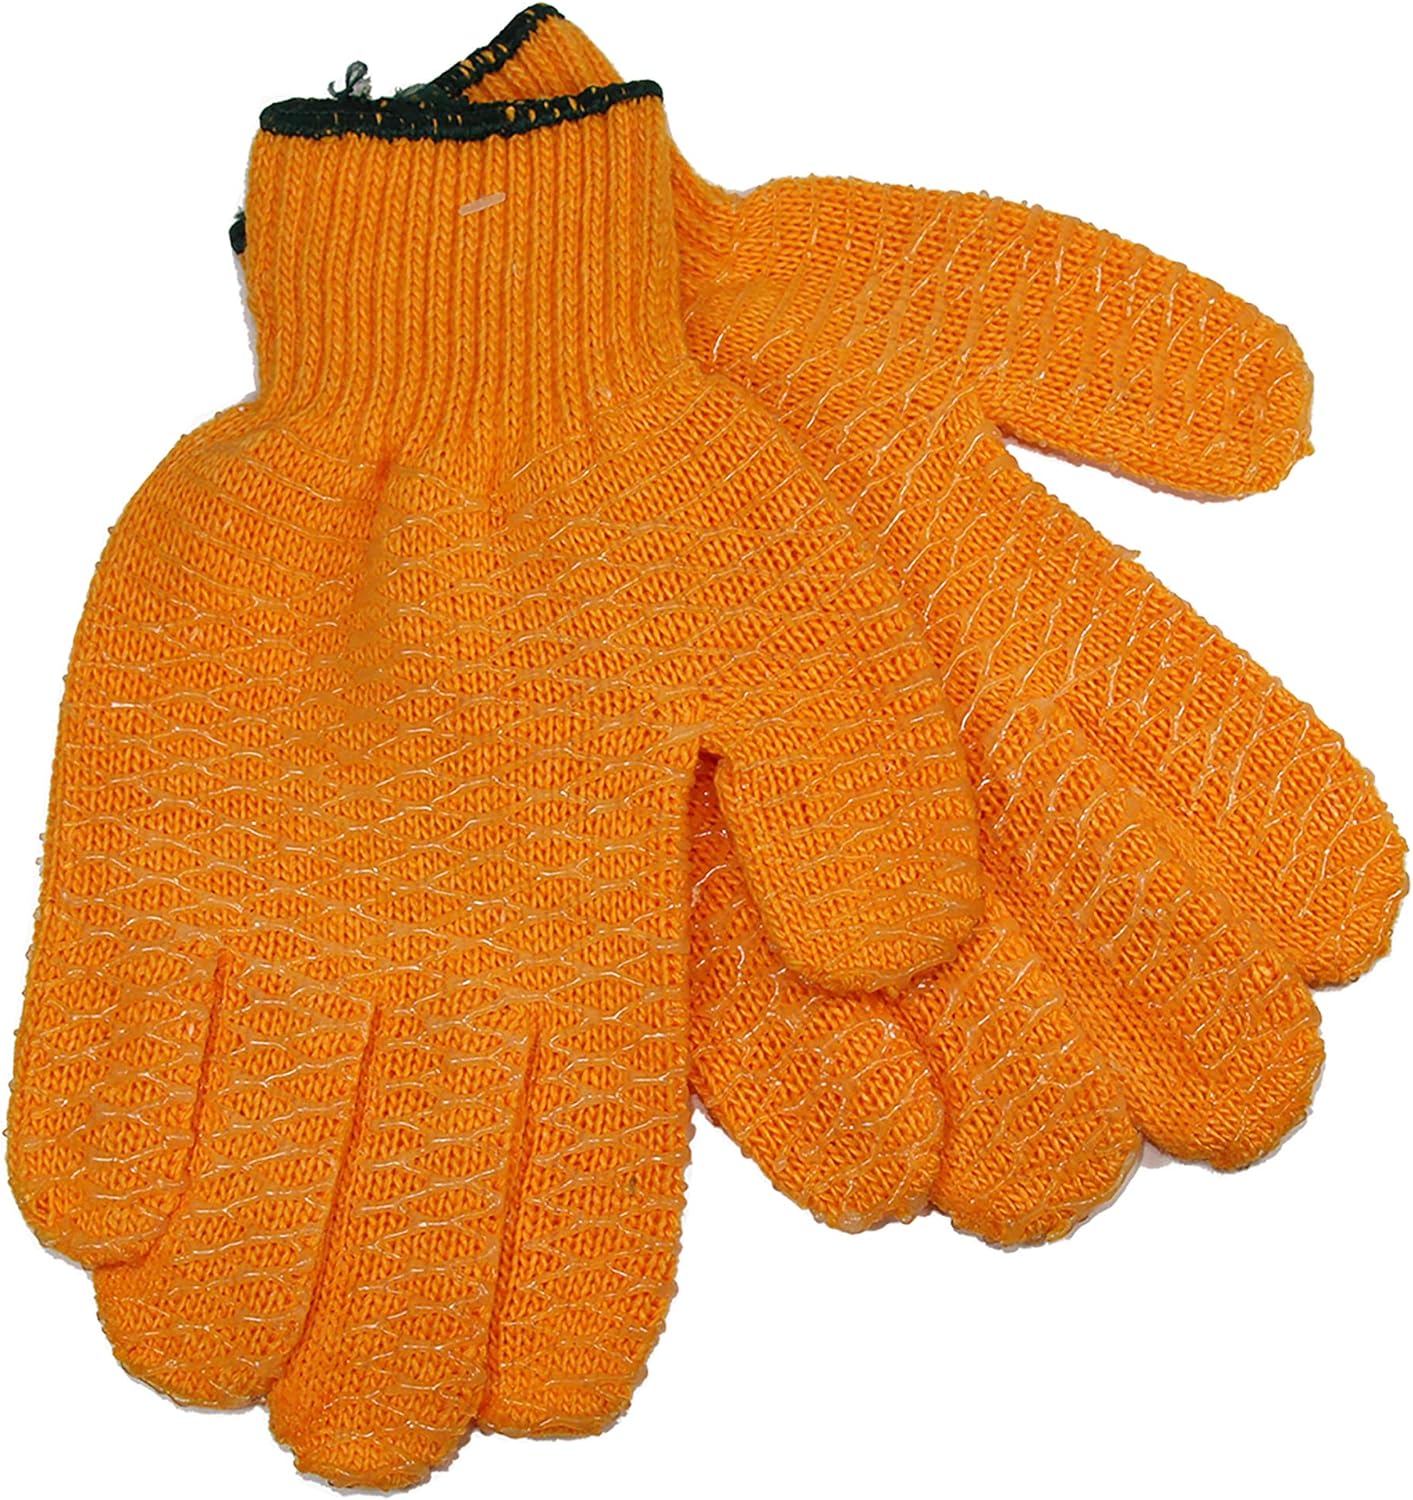 Promar GL-L Honey-Combed Orange Fillet Glove - Large